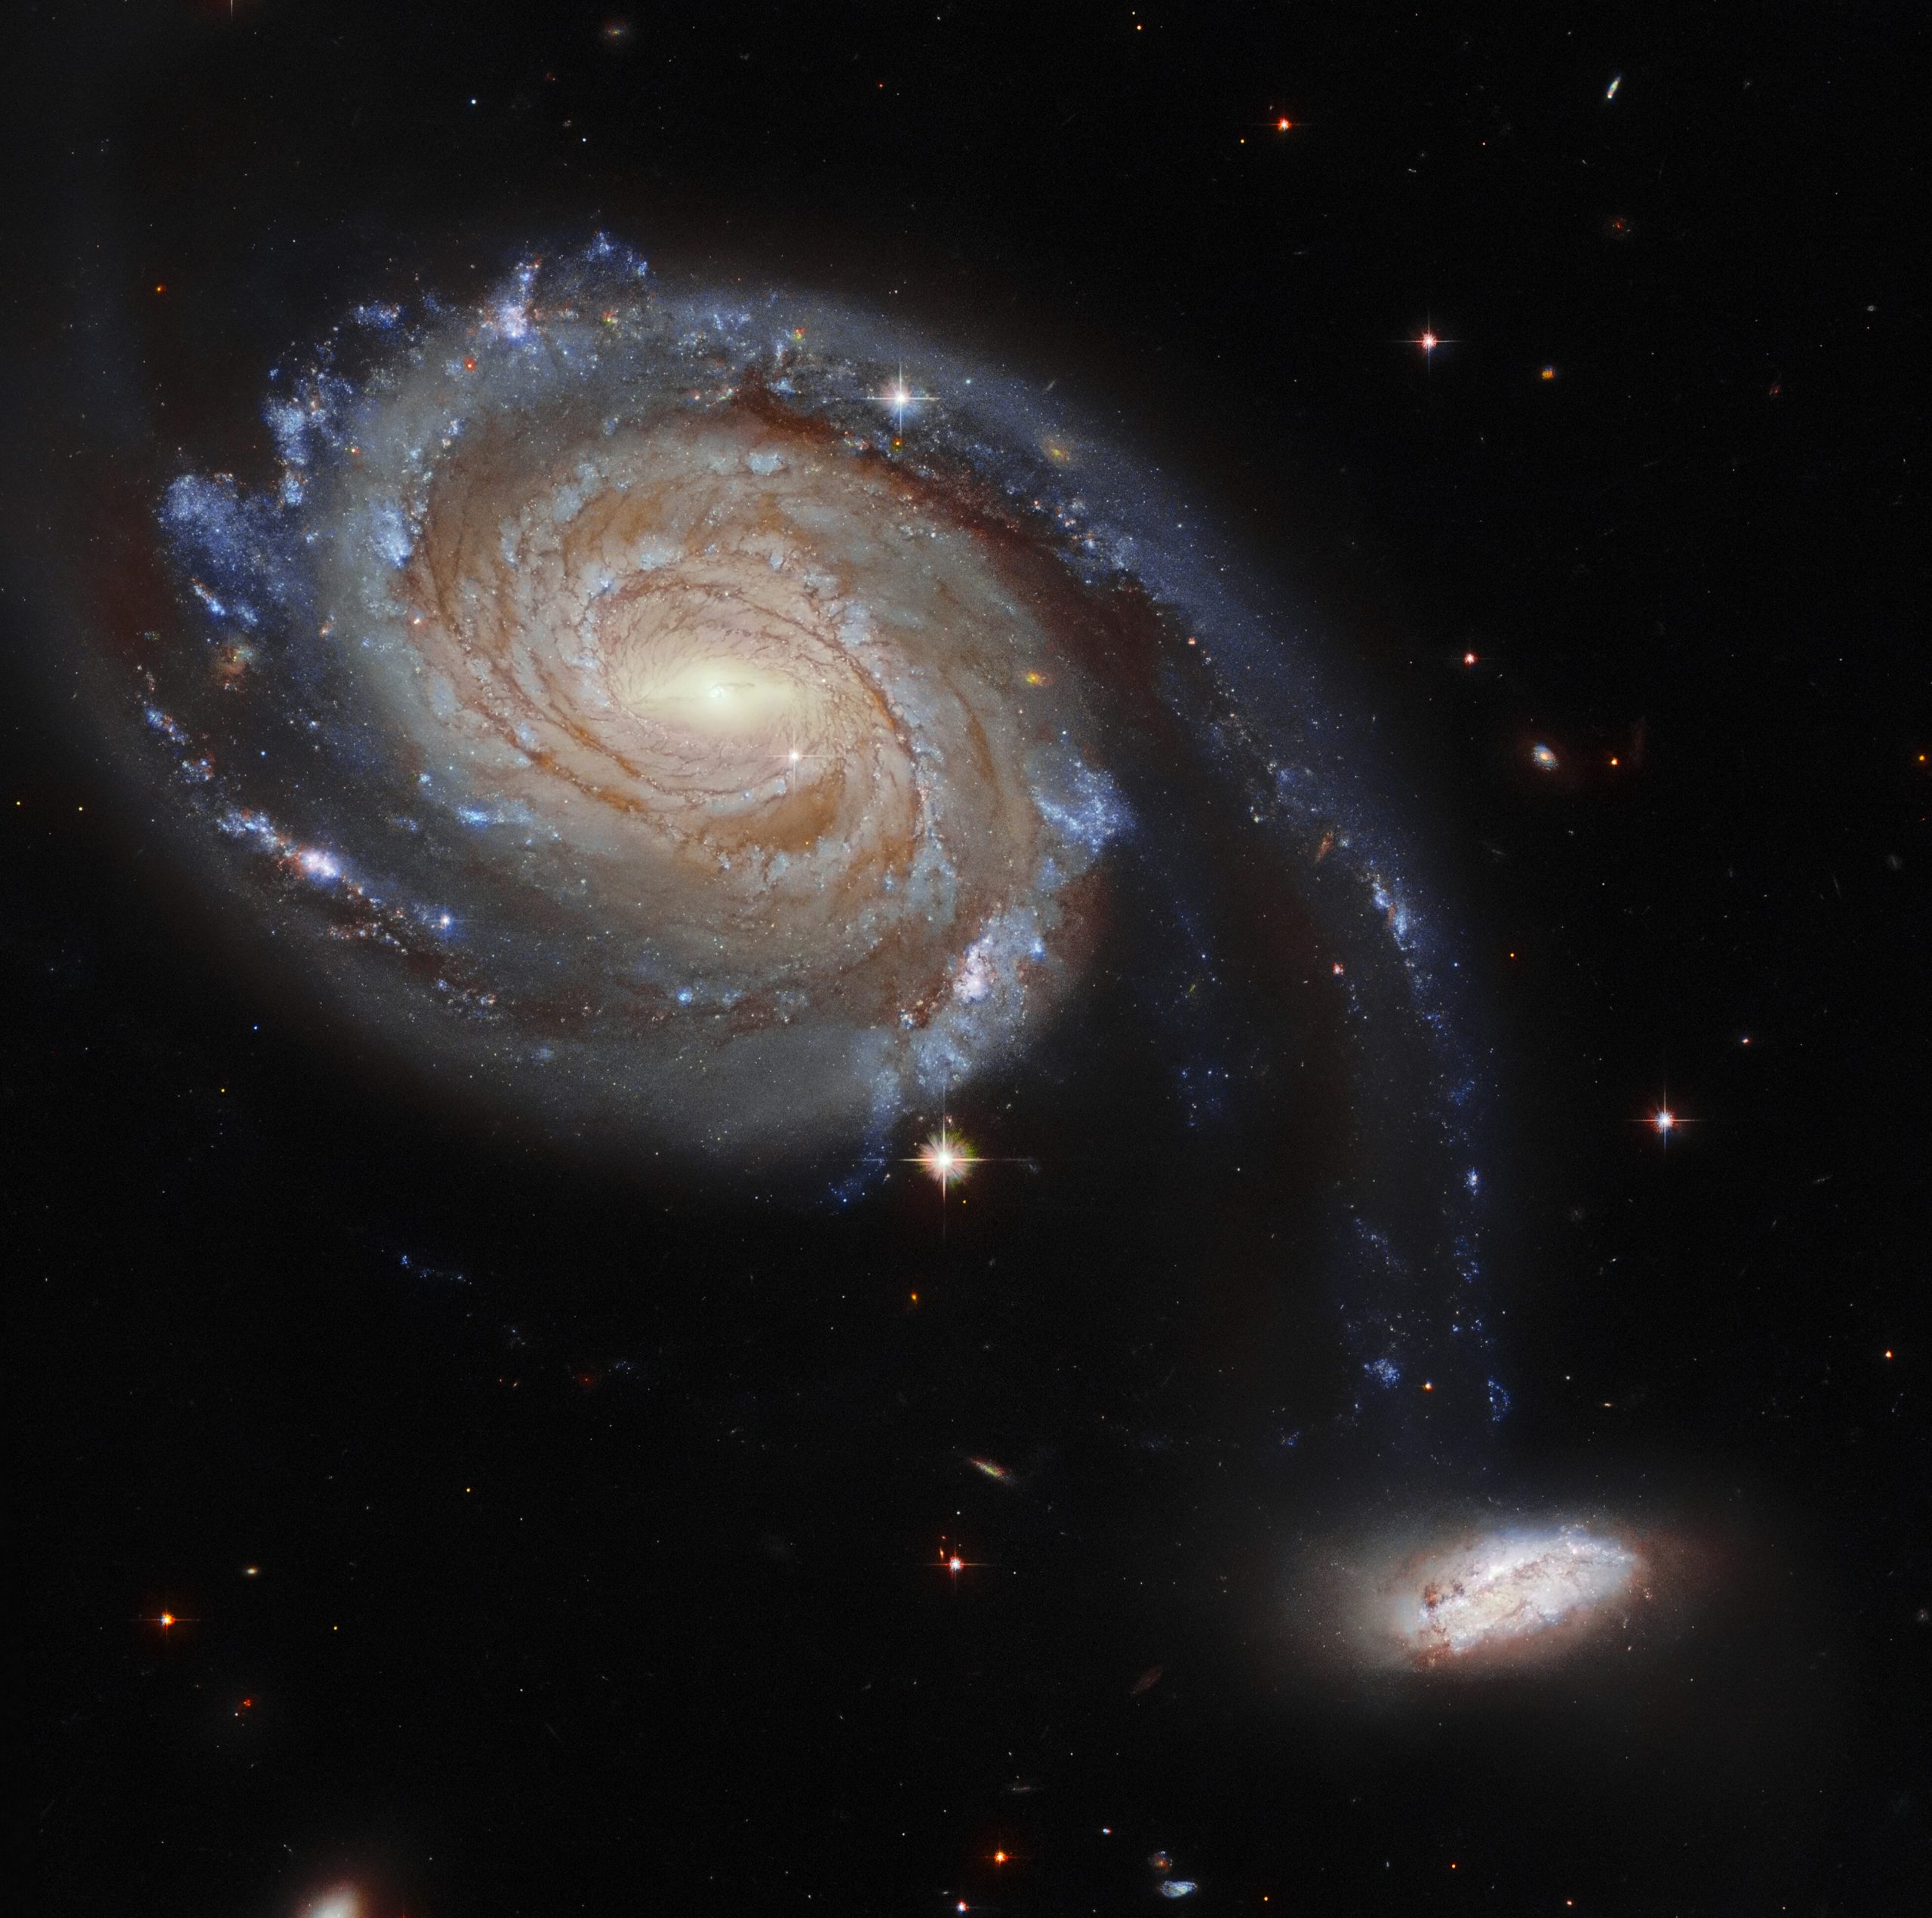 В марте есть изображение пары взаимодействующих галактик под названием «Апрель 86», расположенных на расстоянии 220 миллионов световых лет от нас. Предоставлено: ЕКА / Хаббл и НАСА, Исследование темной энергии, Дж. Далкантон.